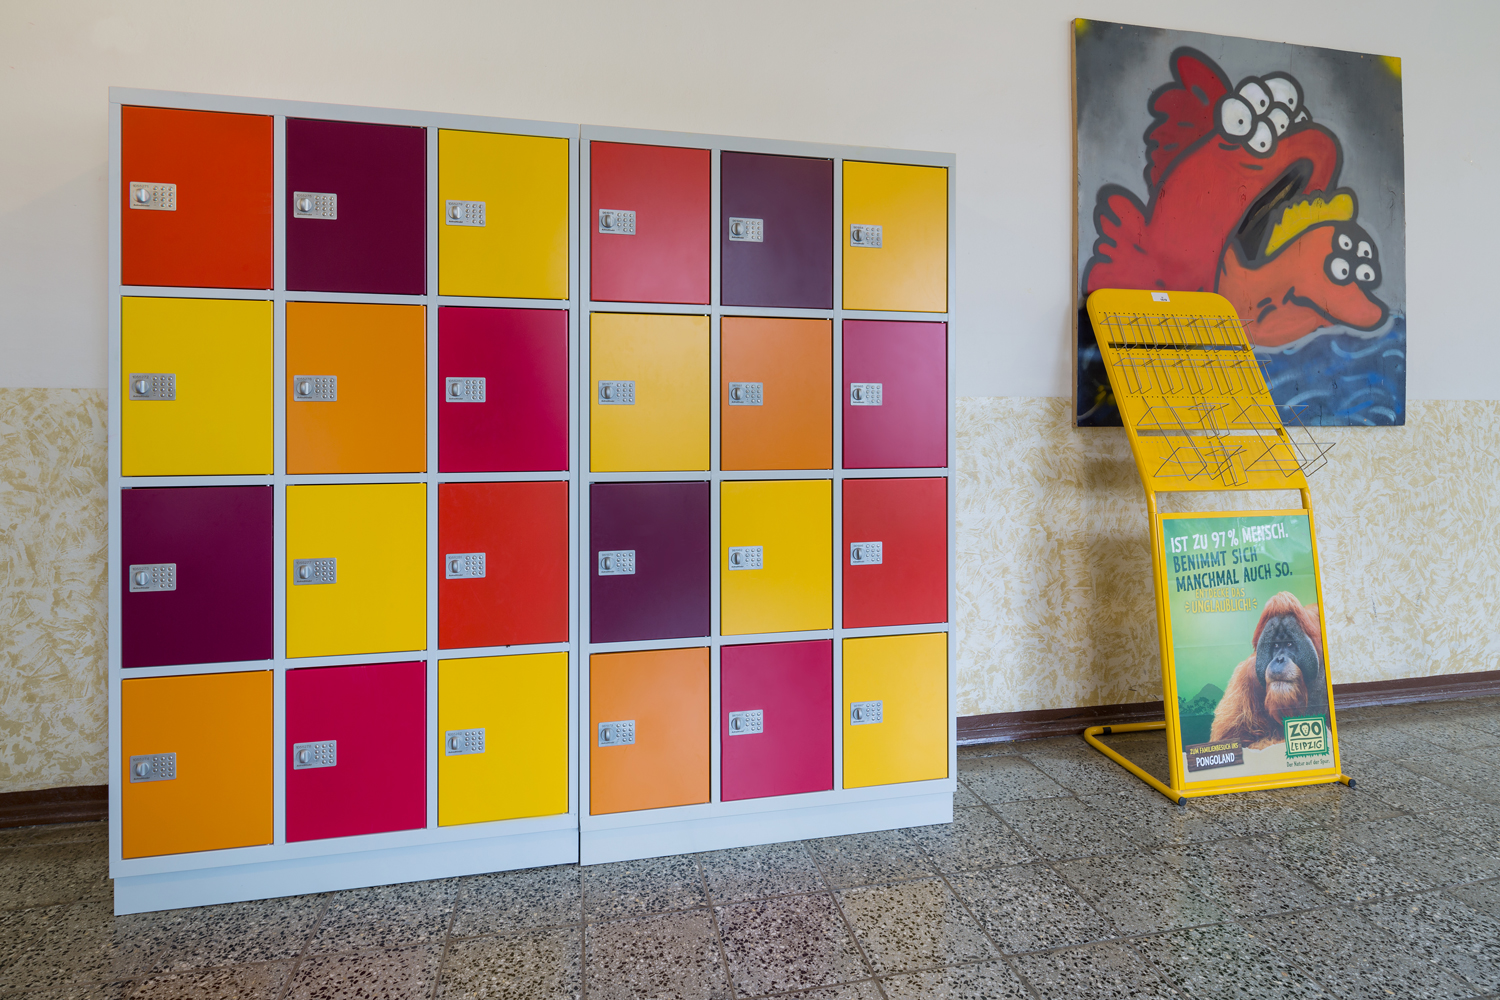 Das Schließfach von astradirect, in der Staatlichen Regelschule in Nöbdenitz. Fotos von Stefan Laus